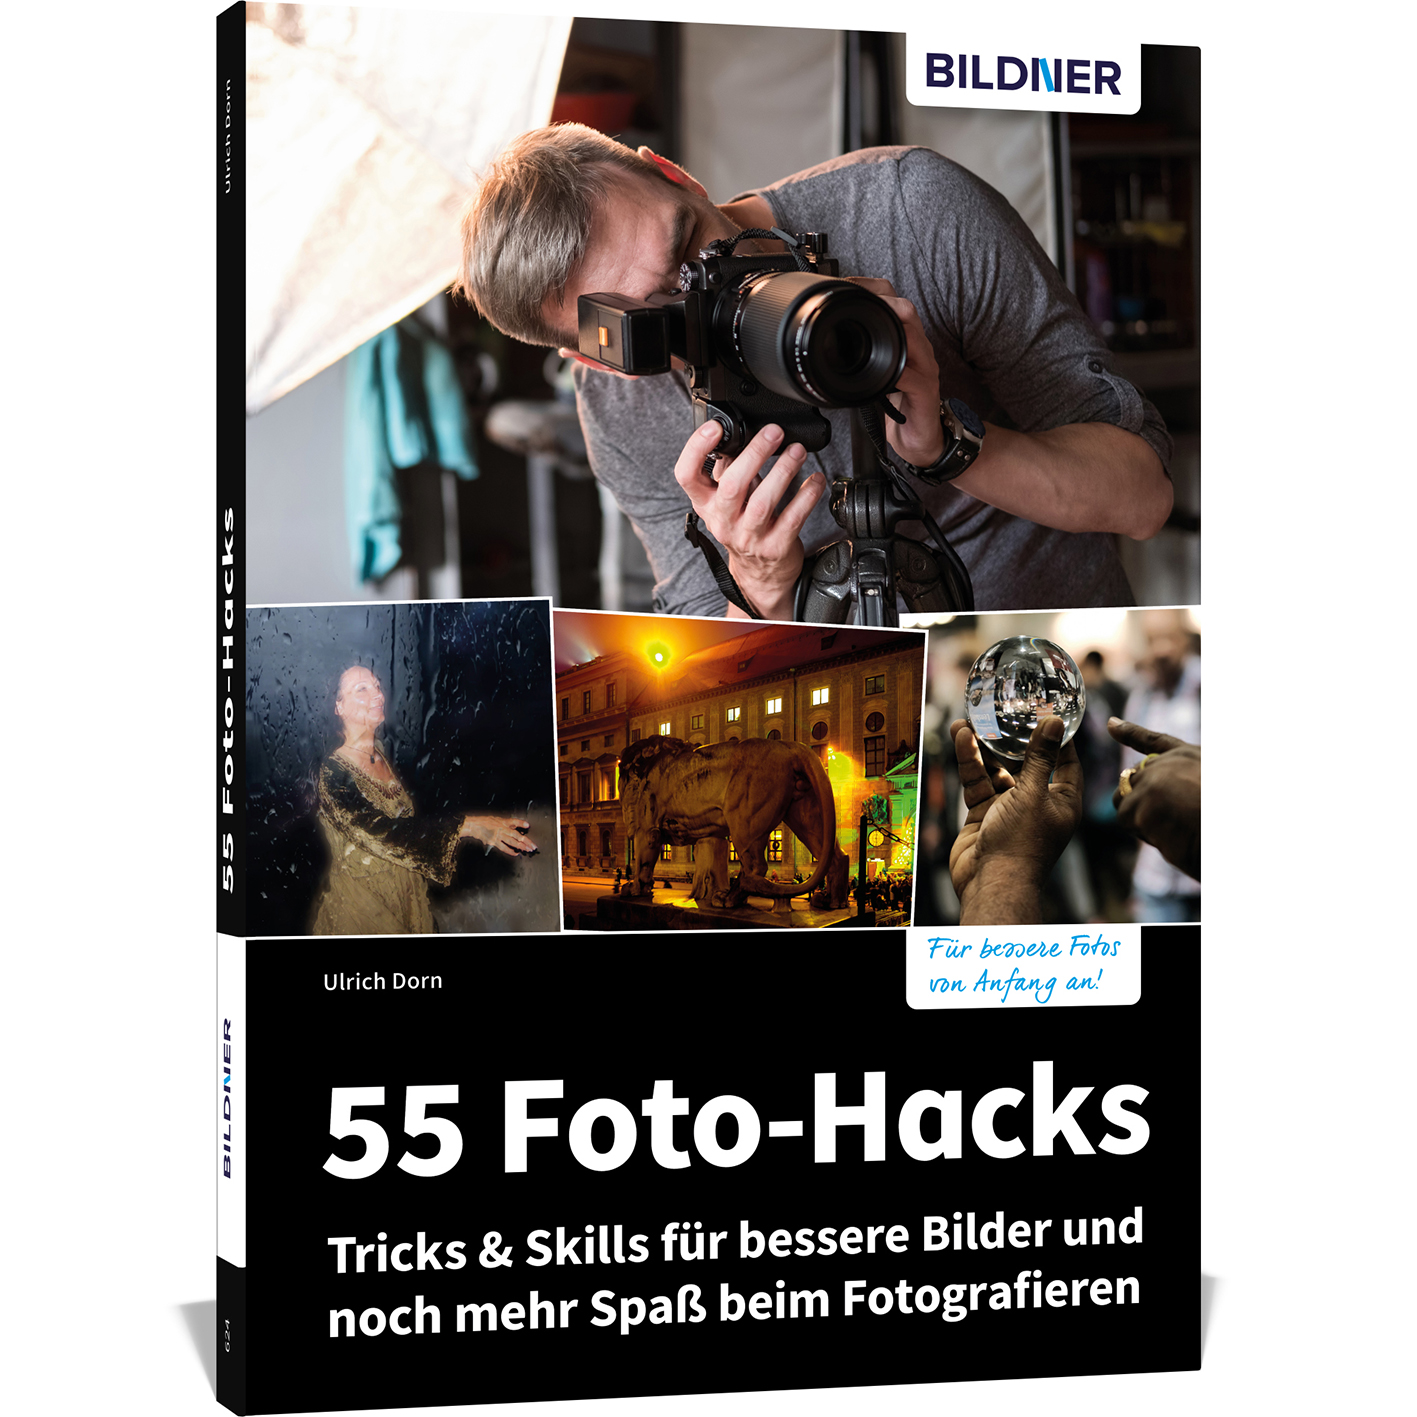 55 Foto-Hacks – Tricks & beim Spaß für mehr noch Fotografieren und Bilder Skills bessere